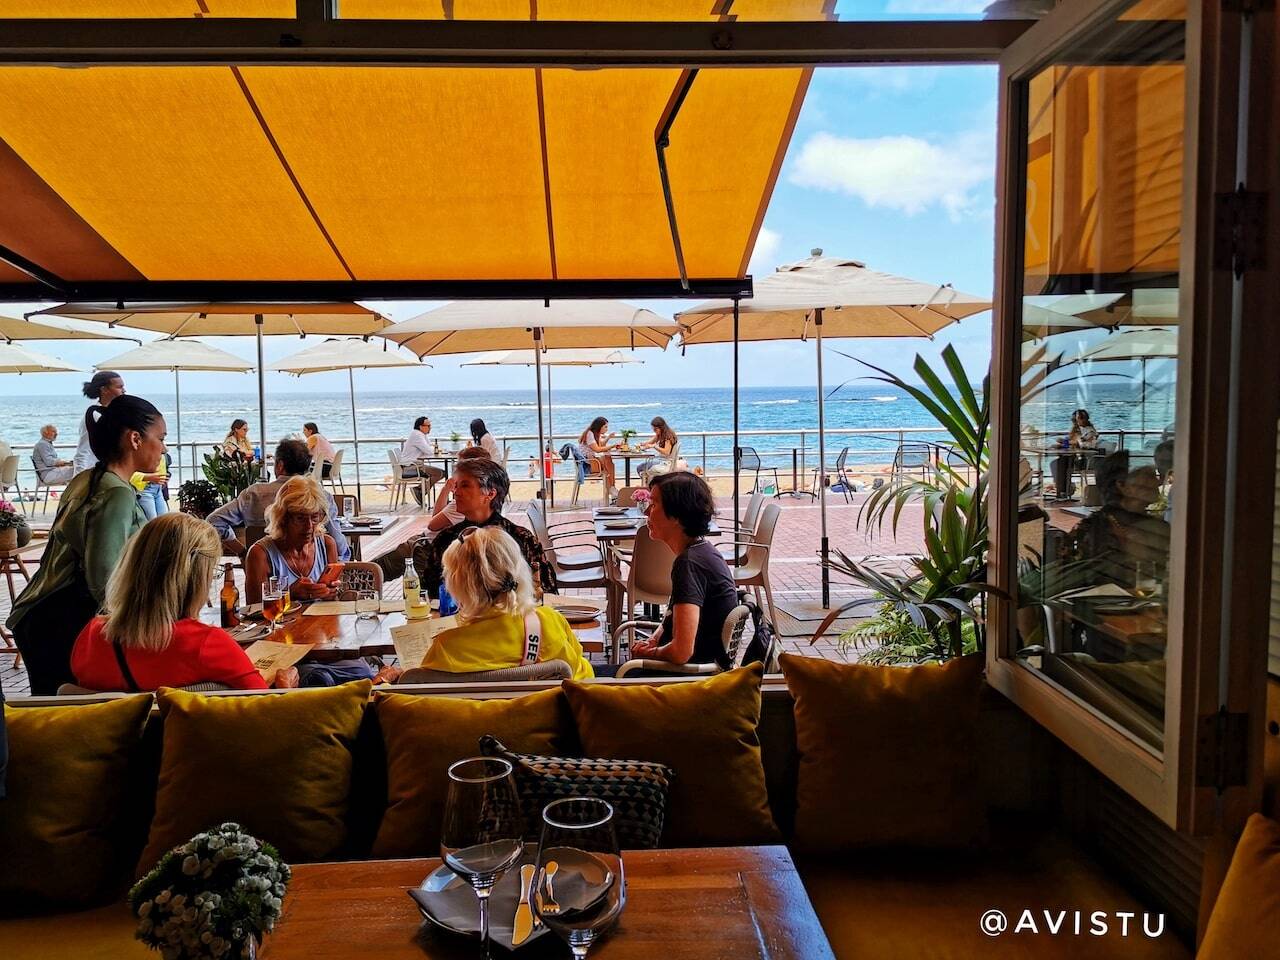 Restaurante con terraza en el Paseo Marítimo,Las Palmas de Gran Canaria